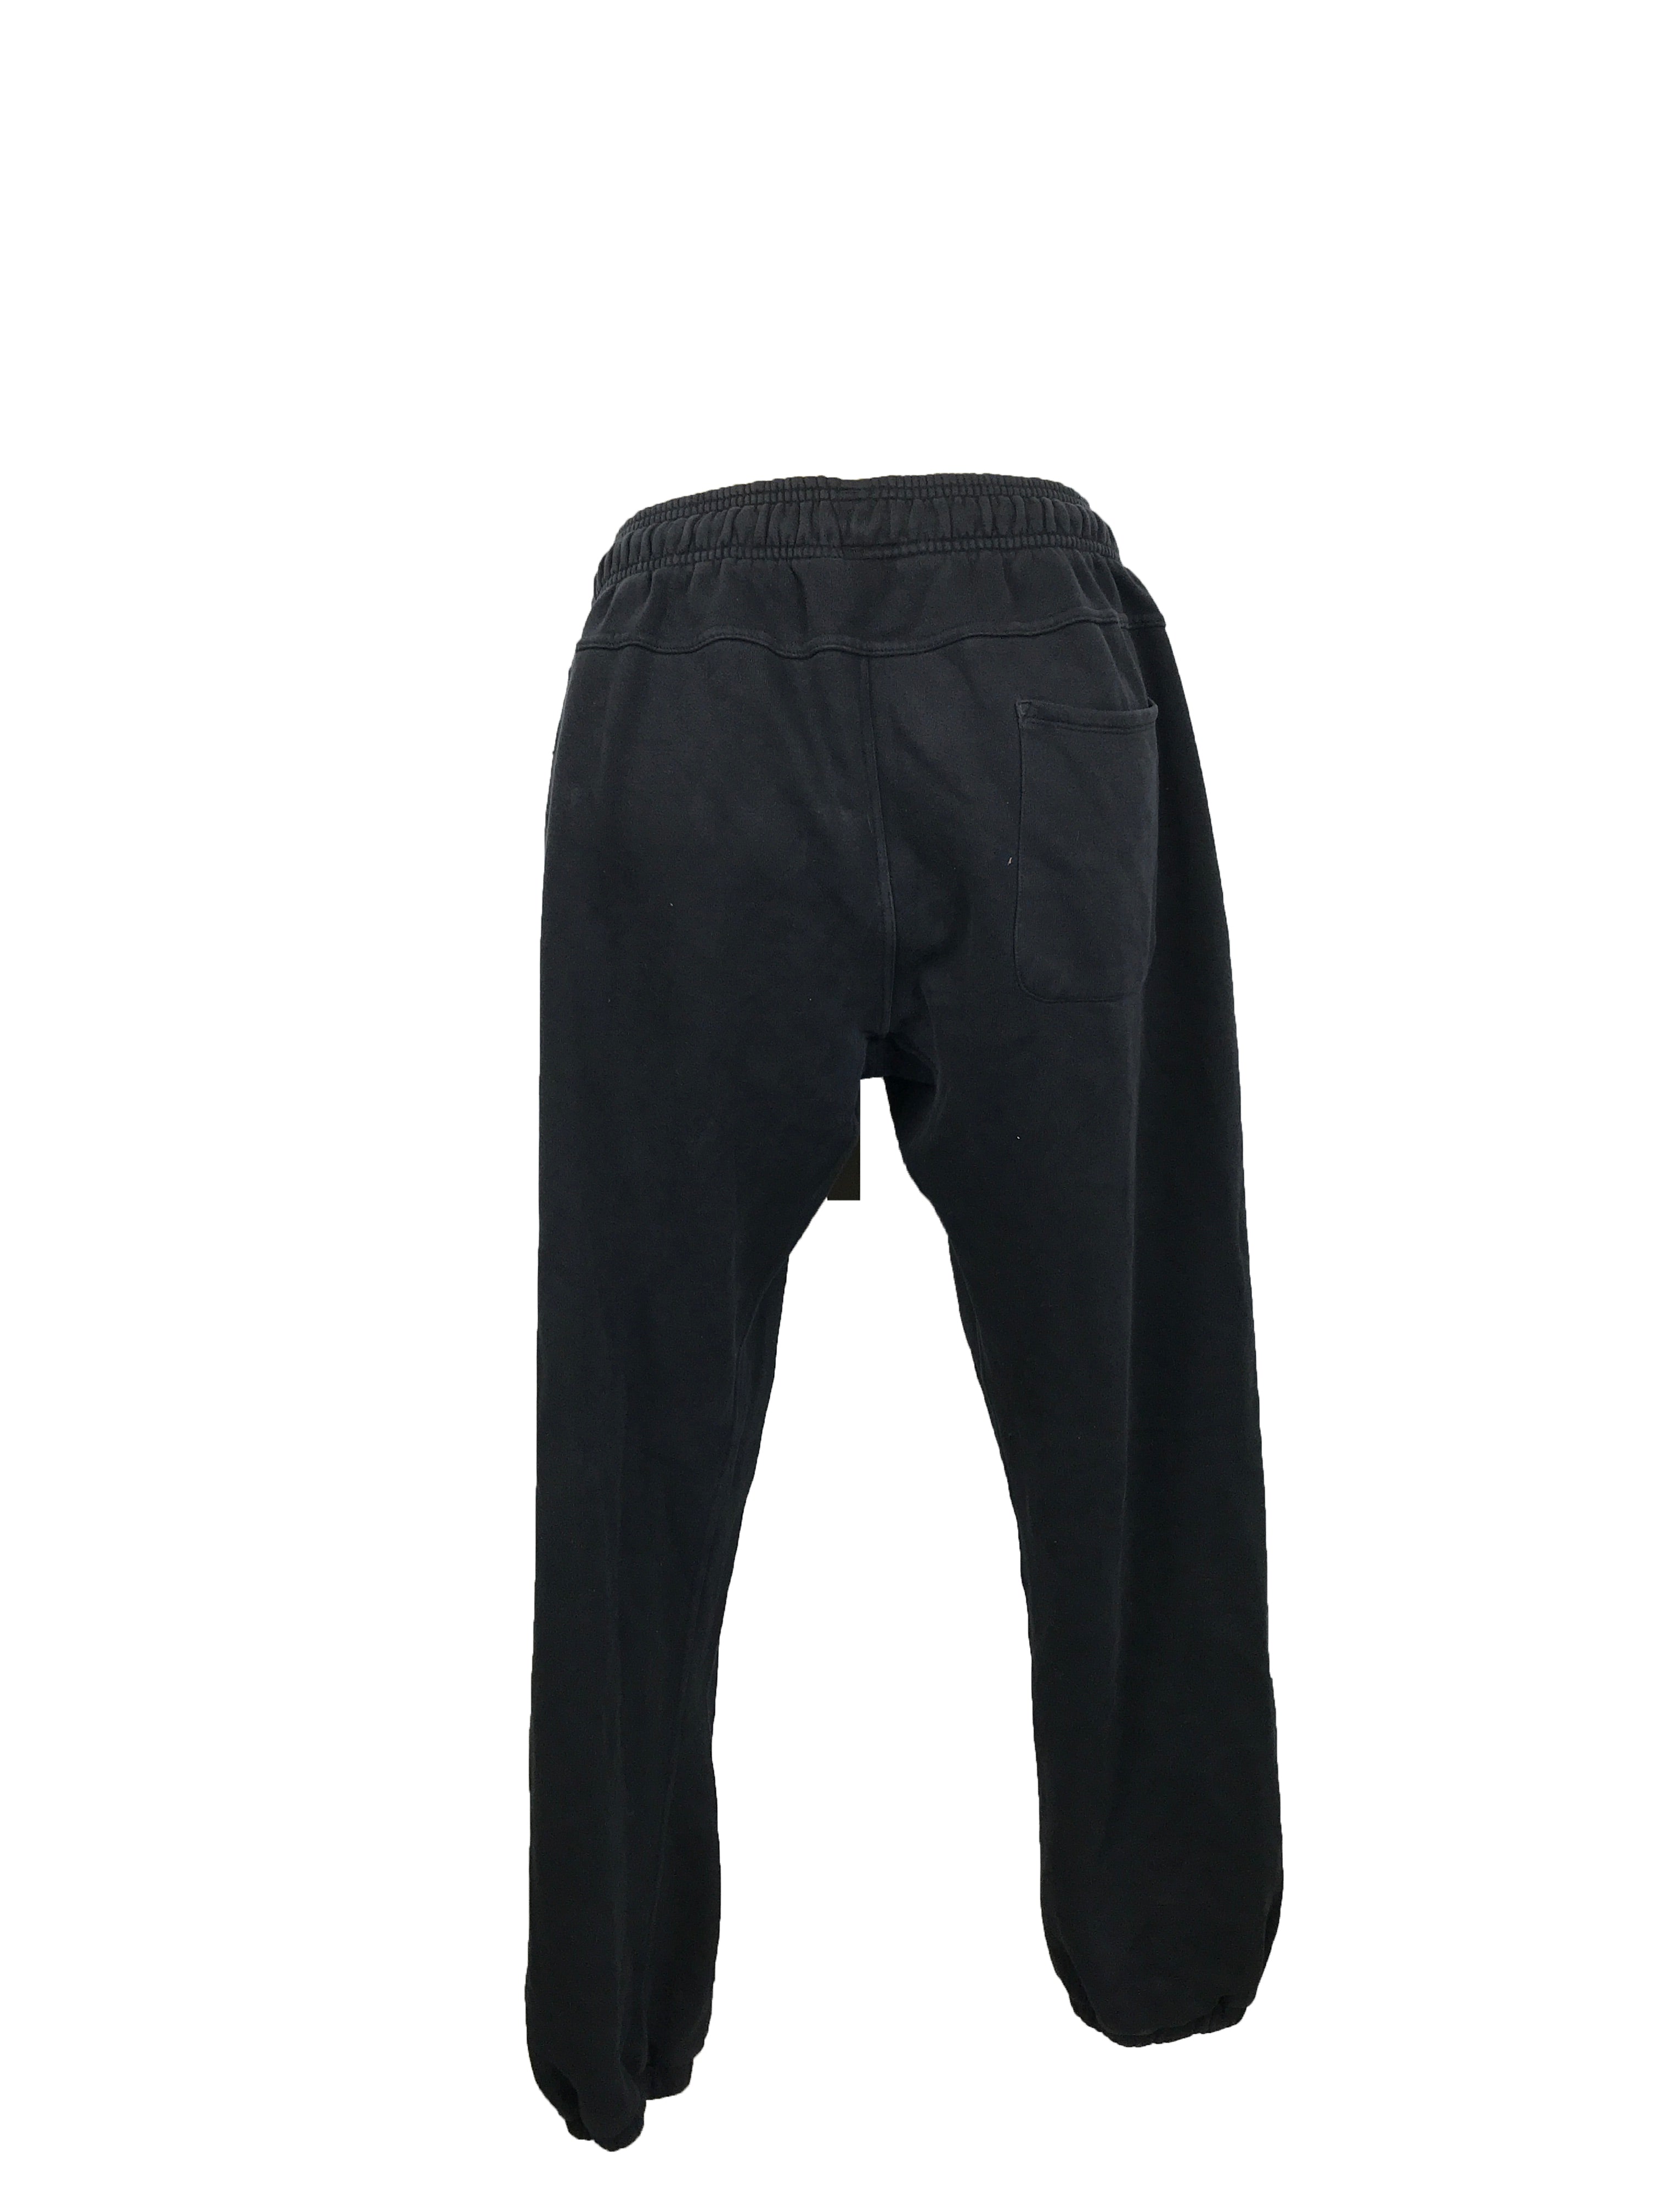 Adidas Black Graphic Sweatpants Men's Size M